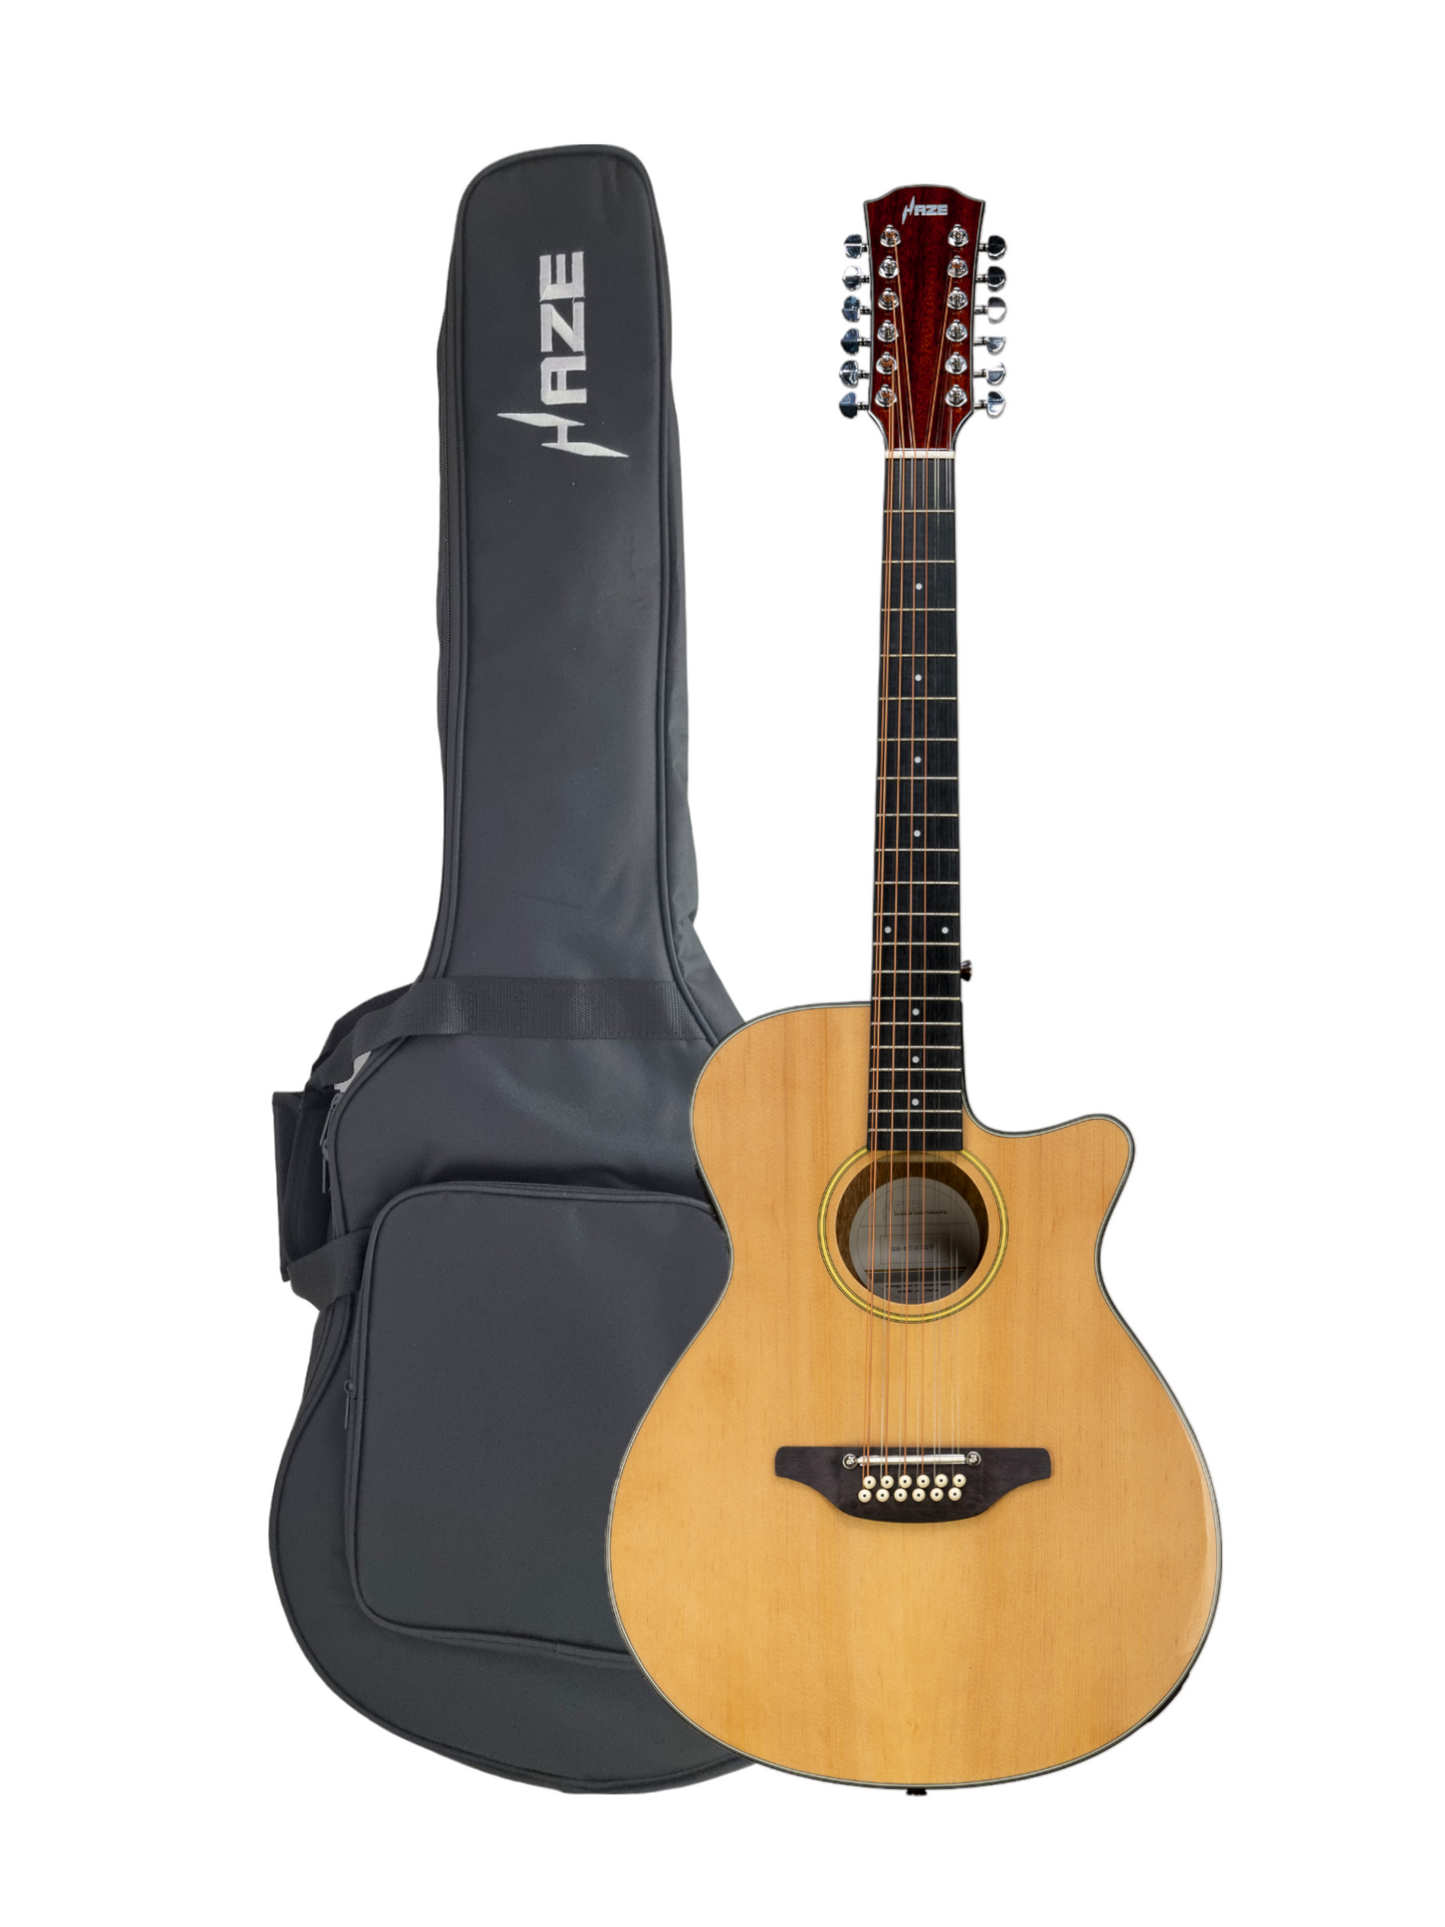 Haze 12-String Saddle Height Adjustable Built-In Pickup/Tuner Acoustic Guitar - Natural SDG82712CEQSN